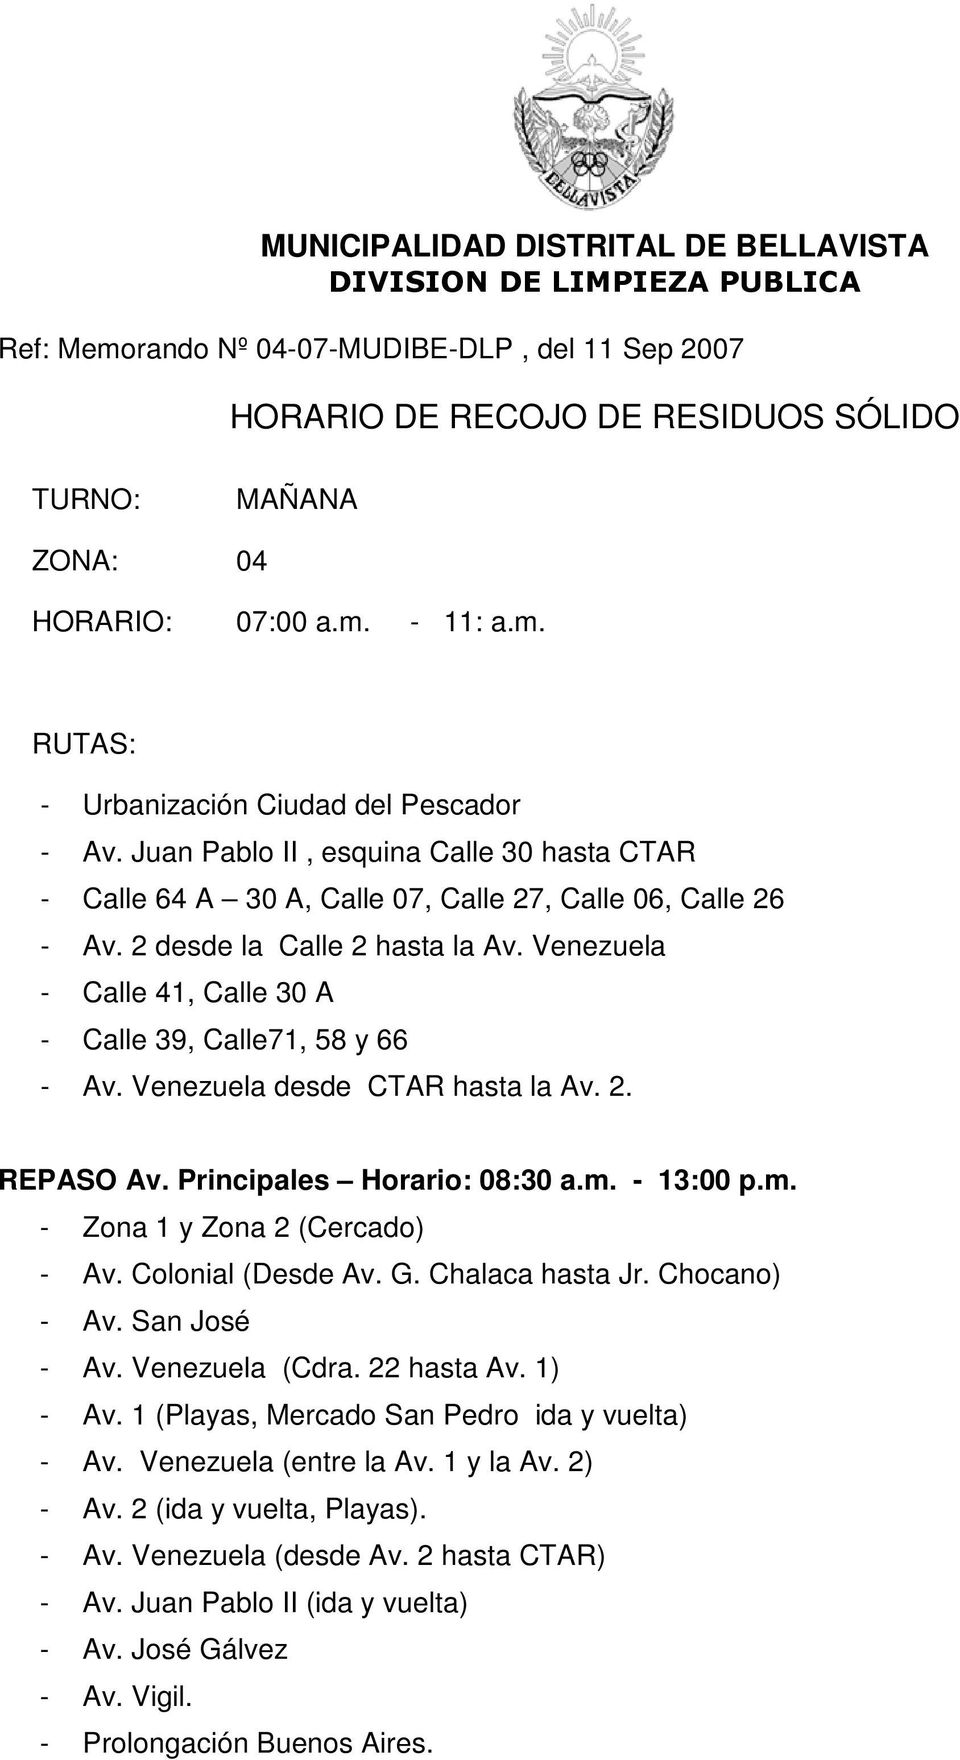 Venezuela - Calle 41, Calle 30 A - Calle 39, Calle71, 58 y 66 - Av. Venezuela desde CTAR hasta la Av. 2. REPASO Av. Principales Horario: 08:30 a.m. - 13:00 p.m. - Zona 1 y Zona 2 (Cercado) - Av.